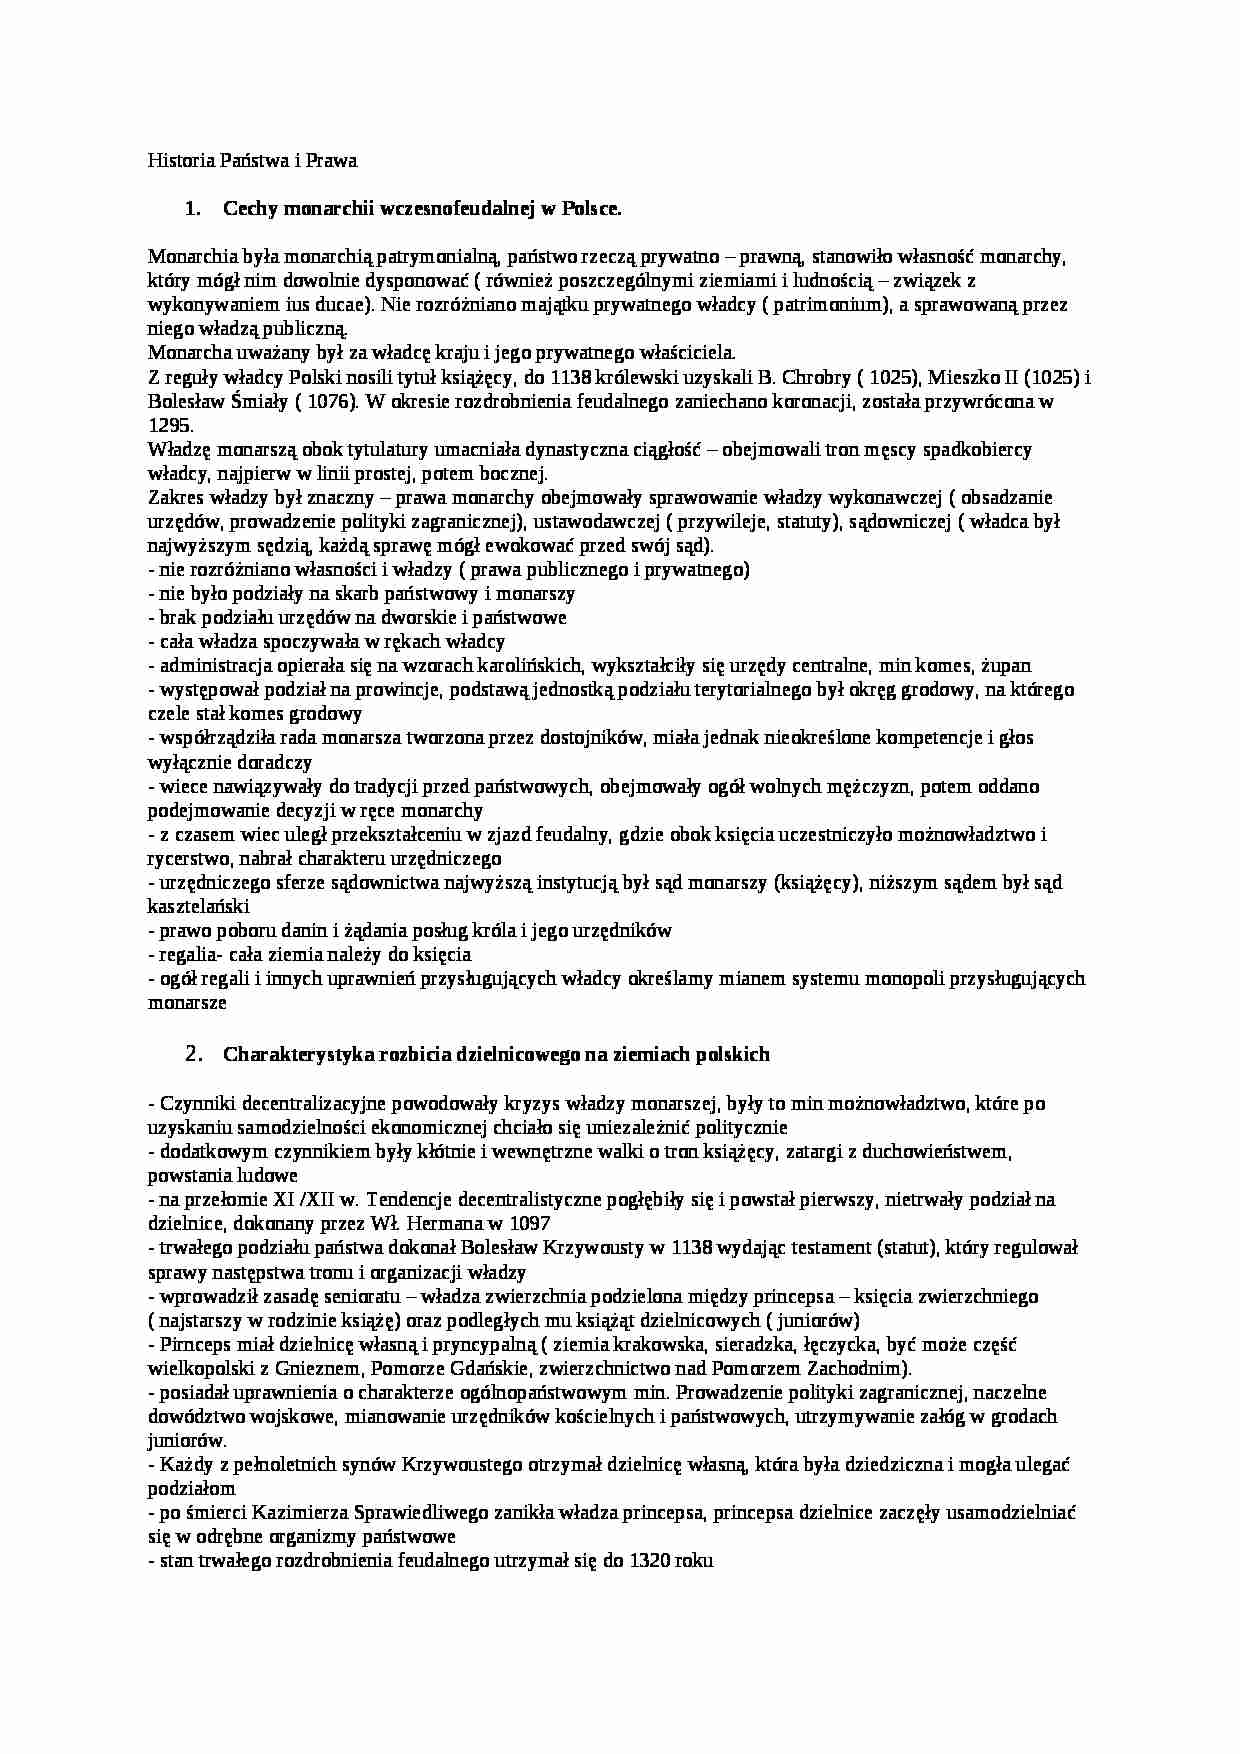 historia państwa i prawa polskiego - Cechy monarchii wczesnofeudalnej w Polsce - strona 1